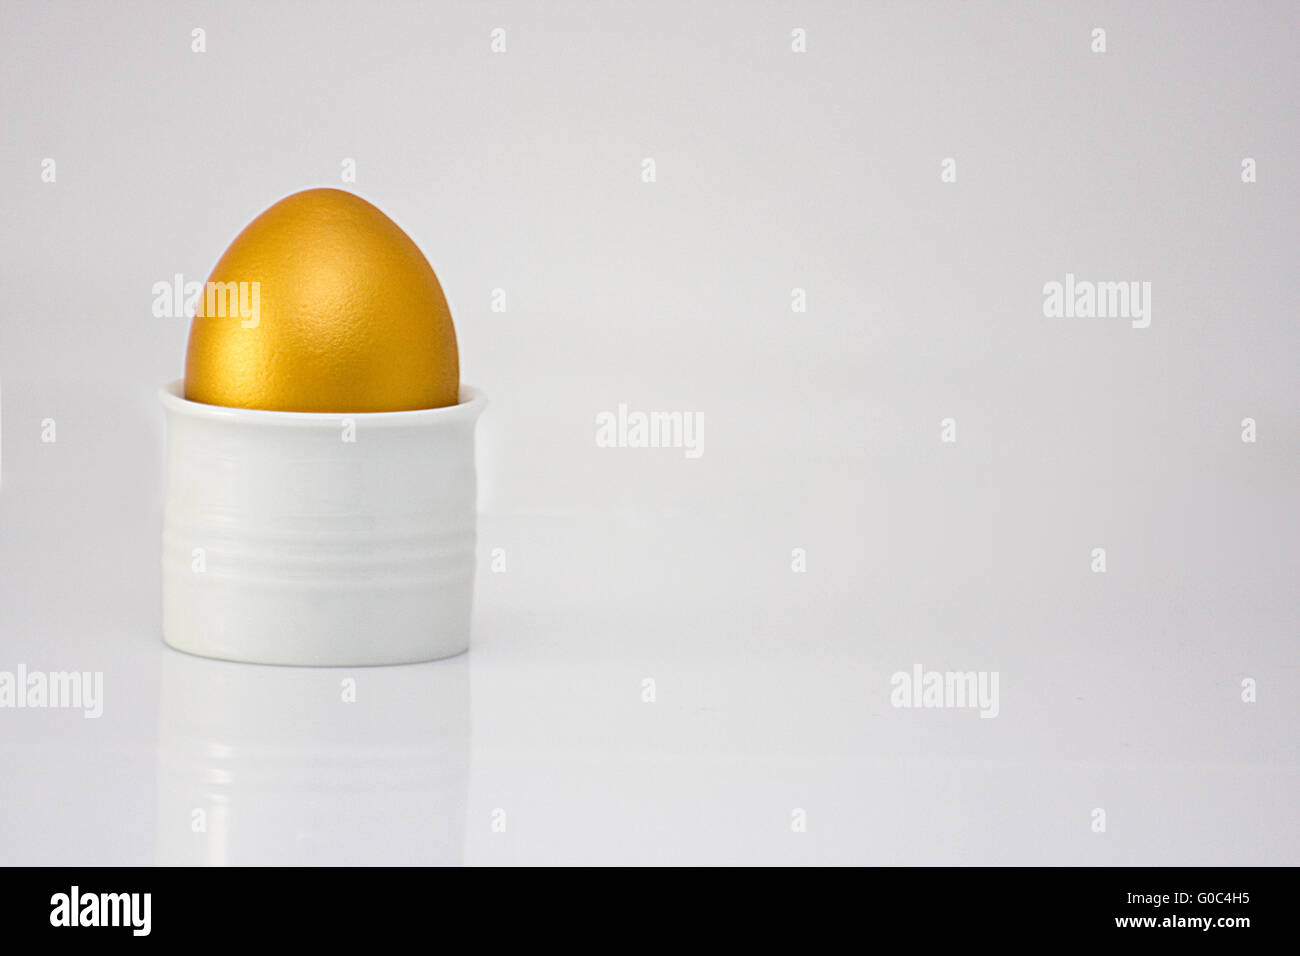 The golden egg Stock Photo